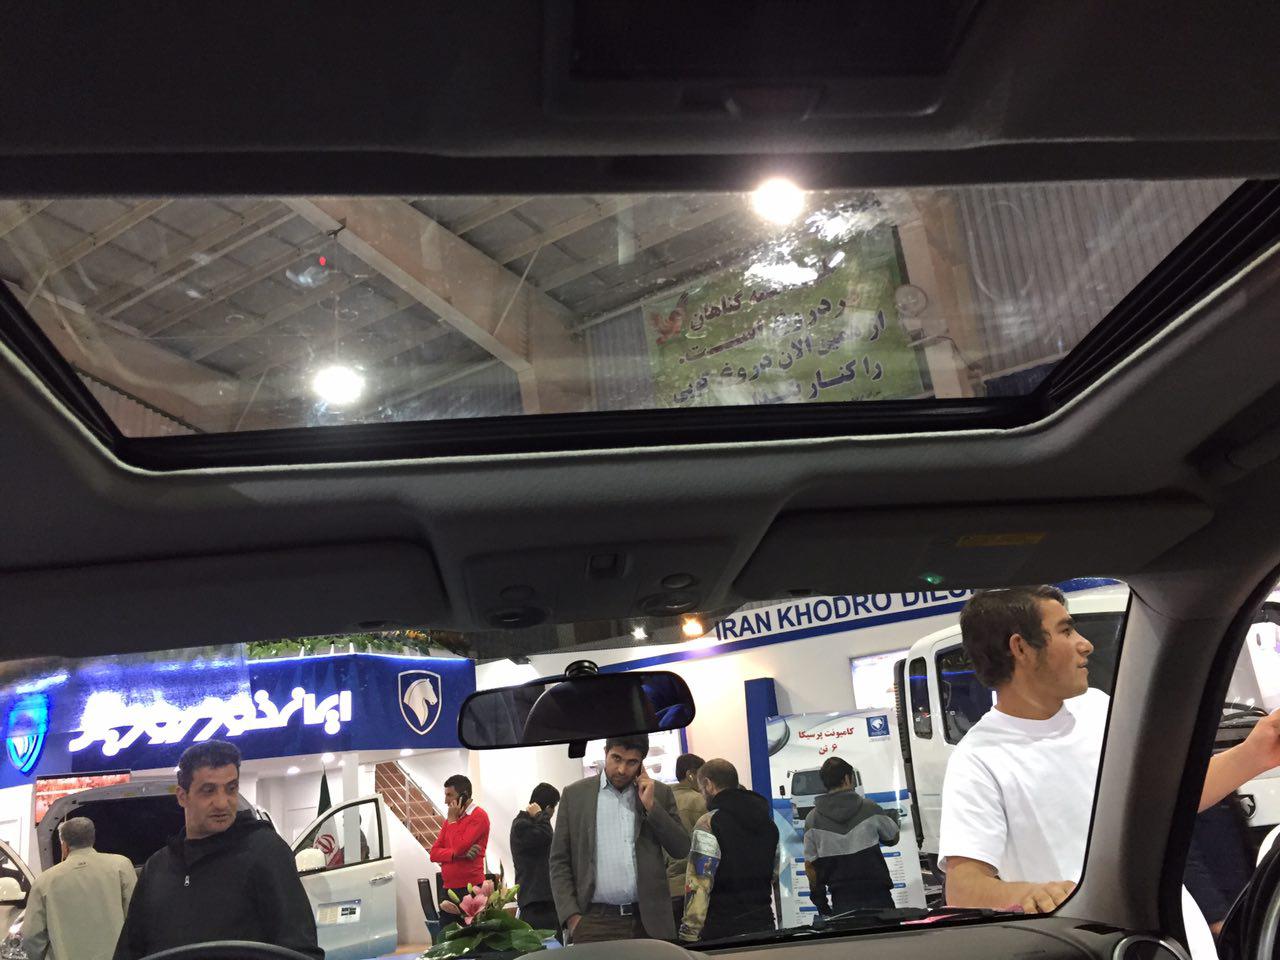  تصاویر غرفه ایران خودرو در نمایشگاه خودرو اصفهان 